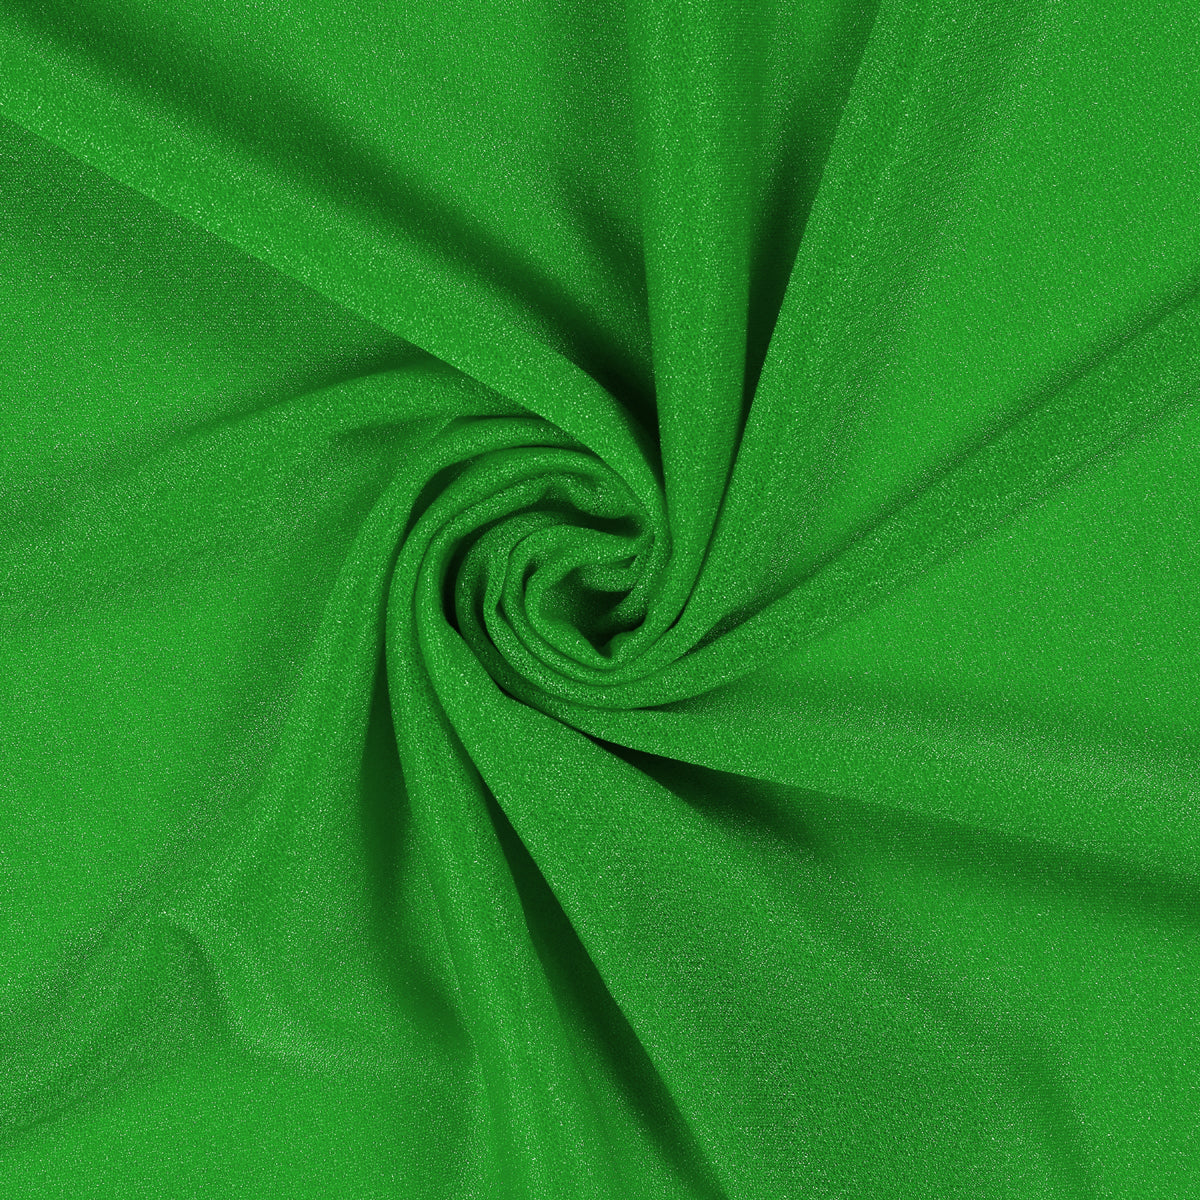 Green,d615c325-0db3-4d98-8ae2-902cc24be128